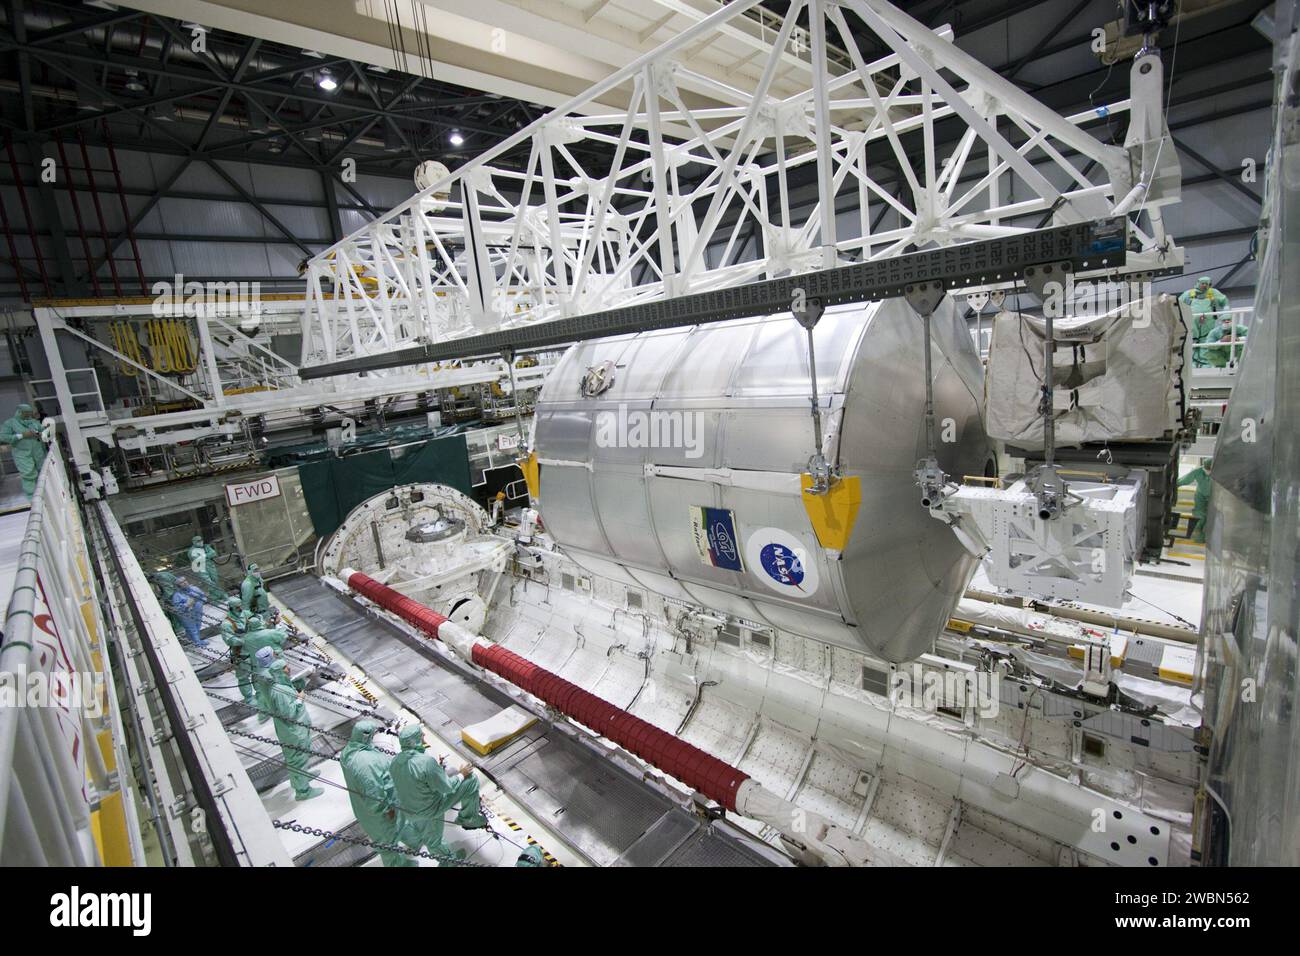 CAPE CANAVERAL, Fla. -- in der Orbiter Processing Facility-2 (OPF-2) im Kennedy Space Center der NASA in Florida überwachen Techniker den Fortschritt, während ein spezielles Entladungsgerät das Raffaello-Mehrzweck-Logistikmodul aus Atlantis' Laderampe hebt. Raffaello wird dann für den Transport zur Verarbeitungsanlage der Raumstation vorbereitet, wo sein Inhalt entladen wird. Atlantis beendete die letzte Raumschiff-Mission der NASA, STS-135, nachdem sie am 21. Juli 2011 um 5:57 Uhr EDT in der Shuttle Landing Facility des Zentrums landete. Nach der Entfernung aller Nutzlasten im Frachtraum von Atlantis werden die Arbeitnehmer dies tun Stockfoto